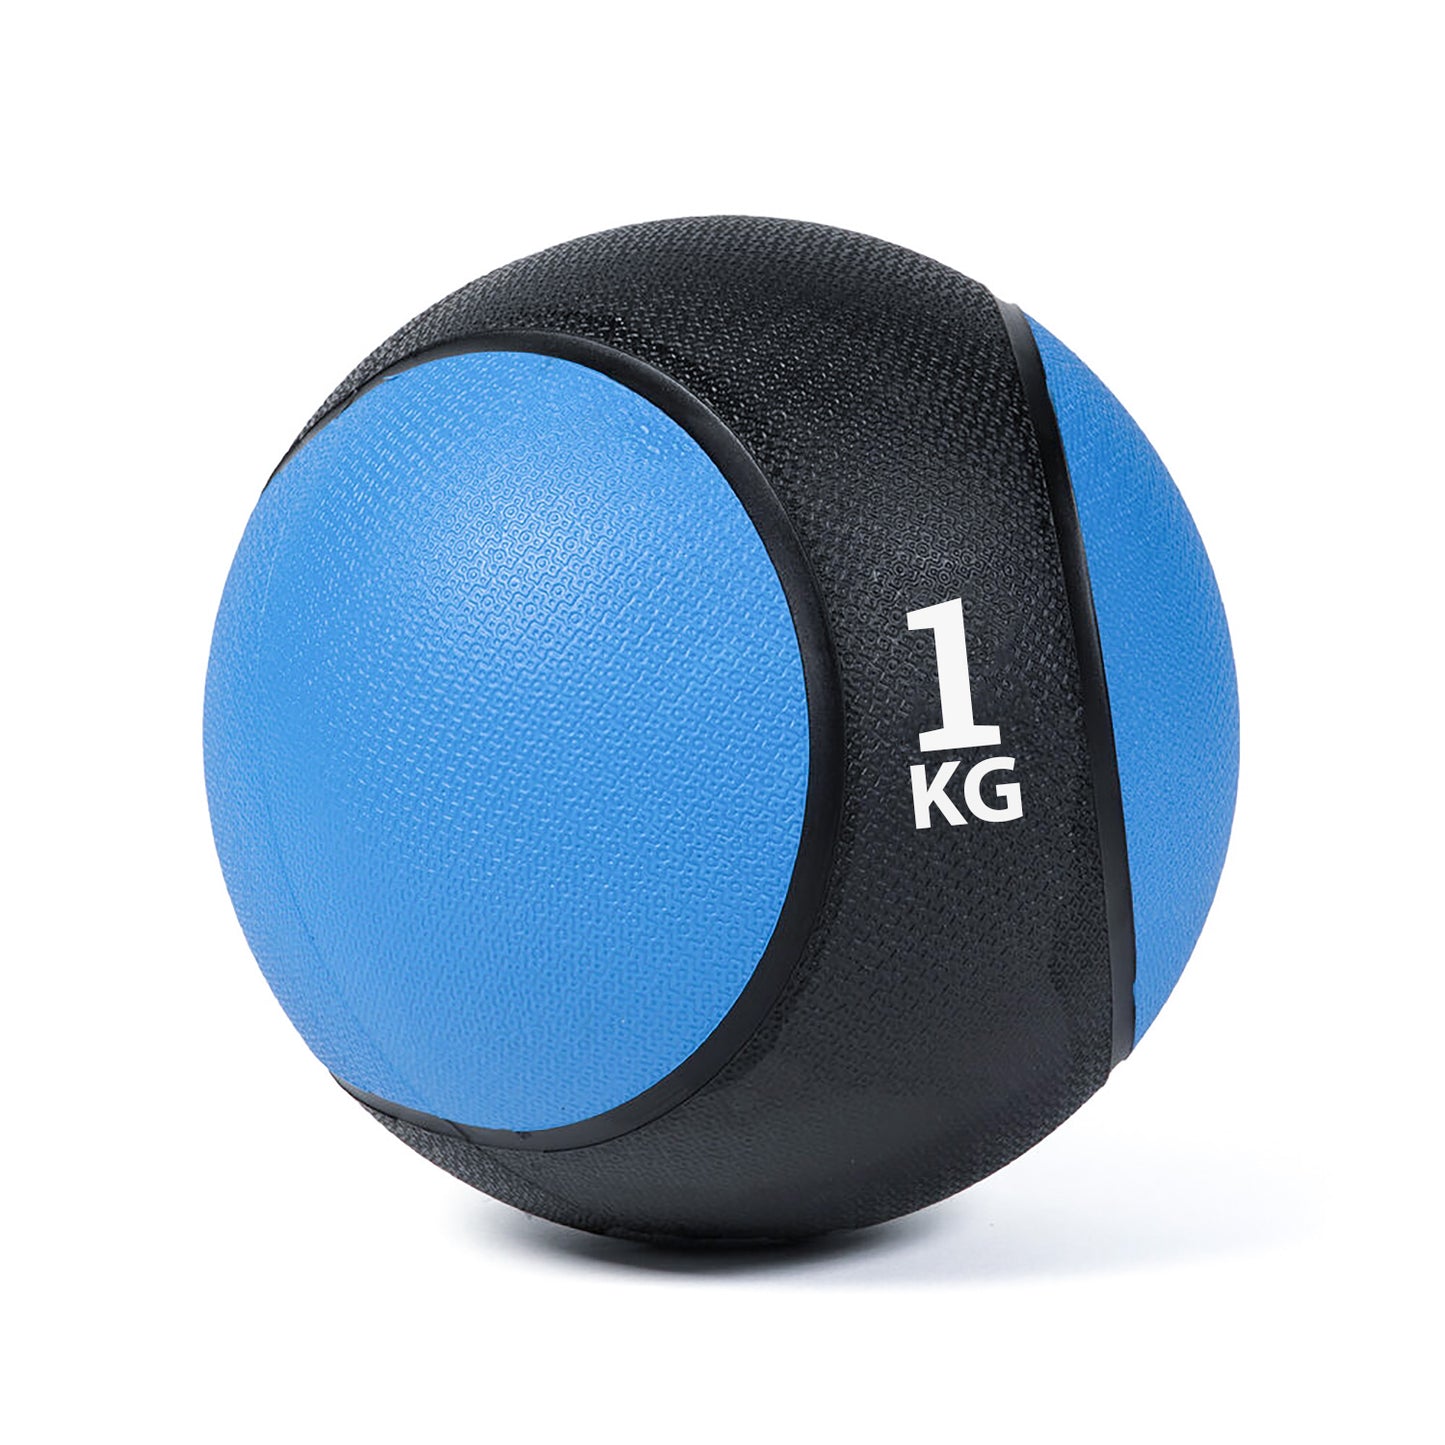 كرة طبية من المطاط لاعادة التأهيل و اللياقة البدنية - لون اسود و ازرق - وزن 1 كيلو جرام